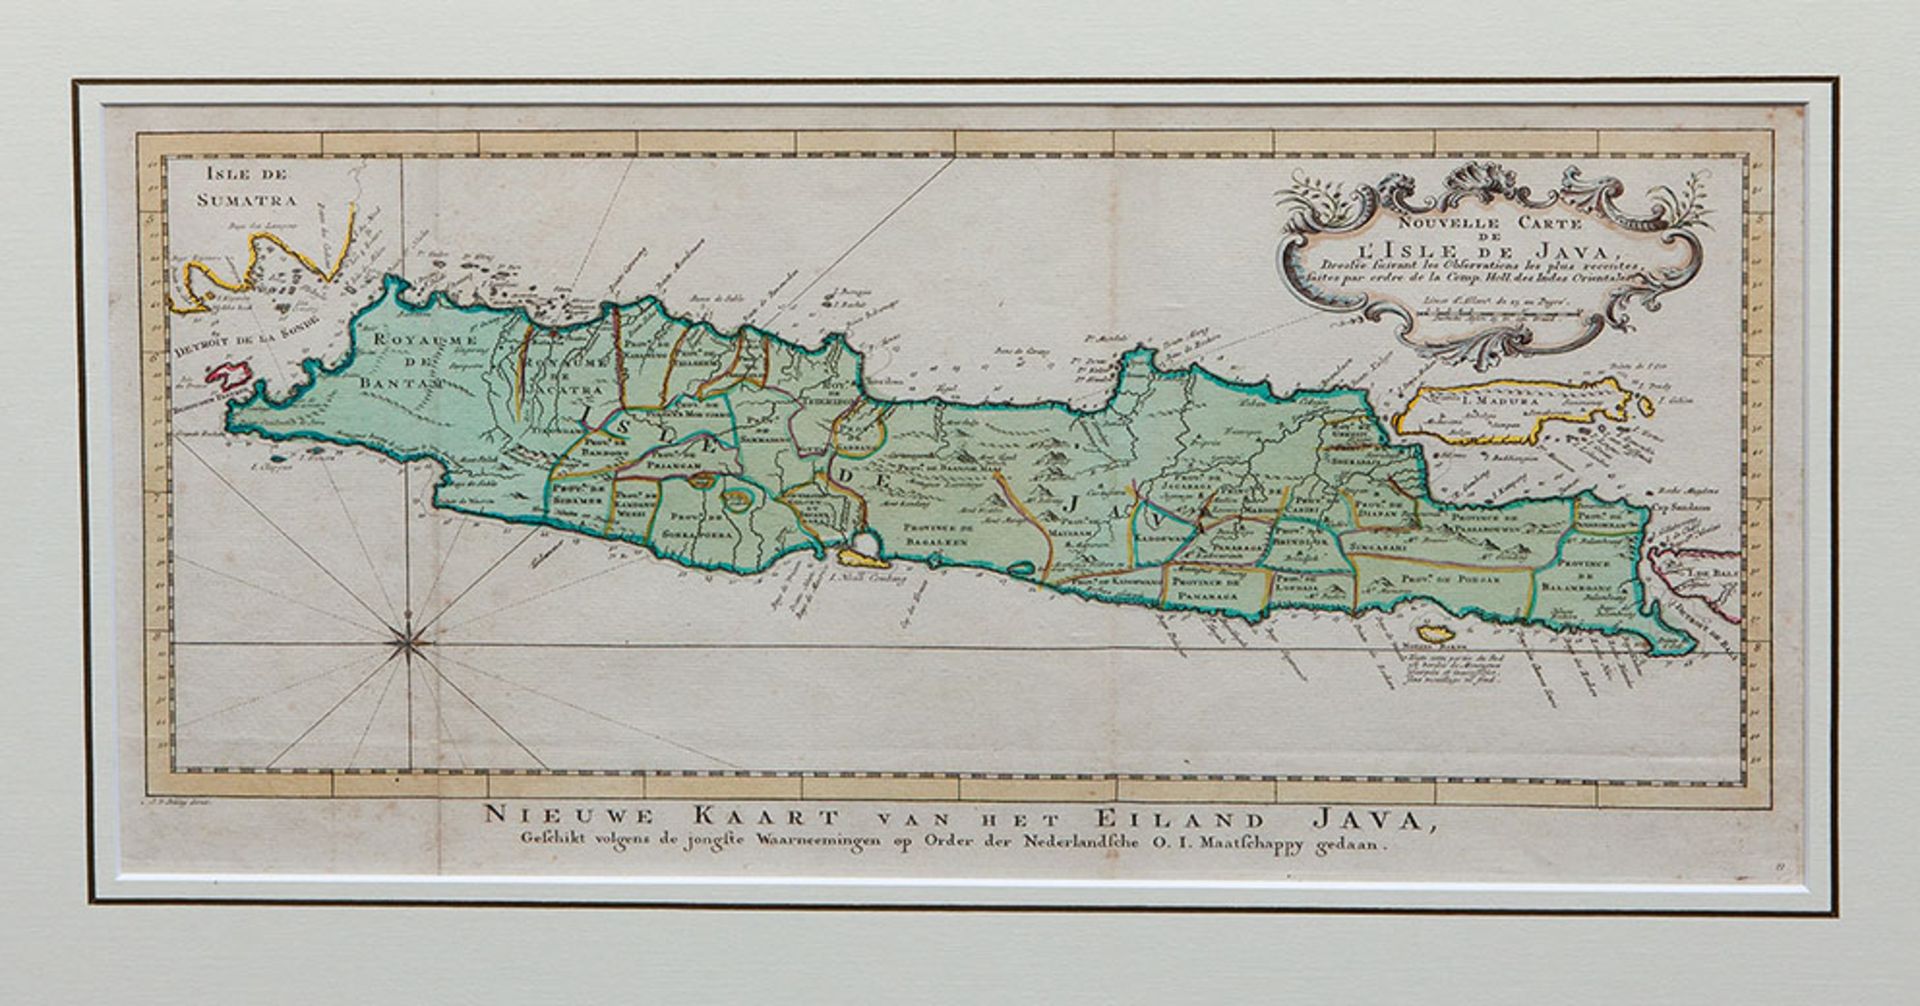 INDONESIA -- "NOUVELLE CARTE de l'Isle de Java". N.d. (The Hague, (etc.), P. de Hondt, c. 1750).